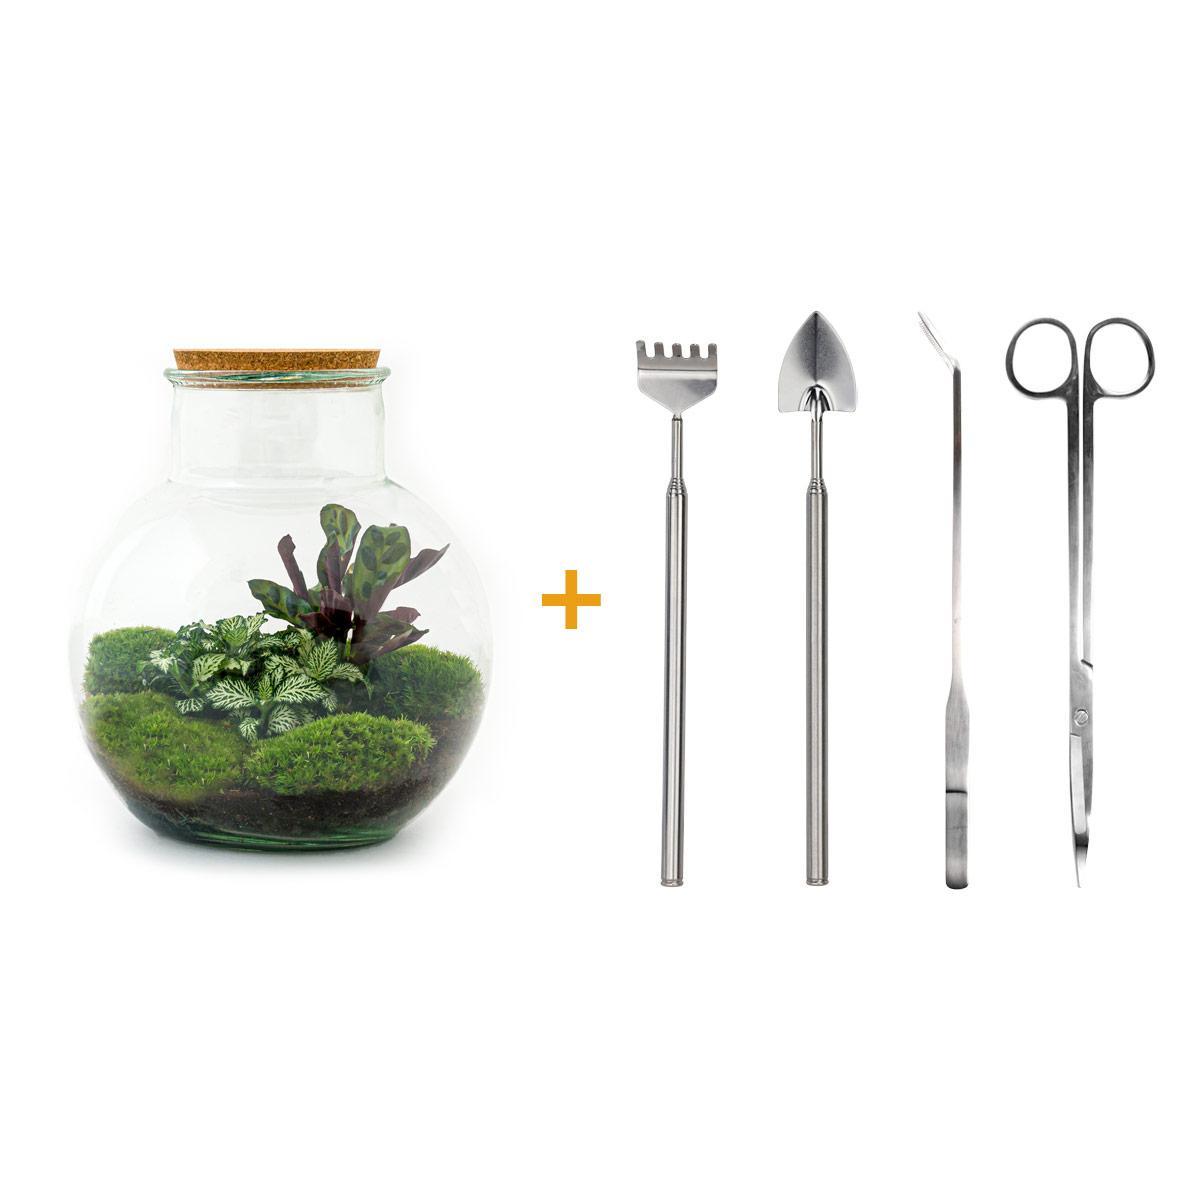 DIY terrarium - Teddy - ↕ 26,5 cm DIY terrarium - Teddy - ↕ 26,5 cm - Rake + Shovel + Tweezer + Scissors